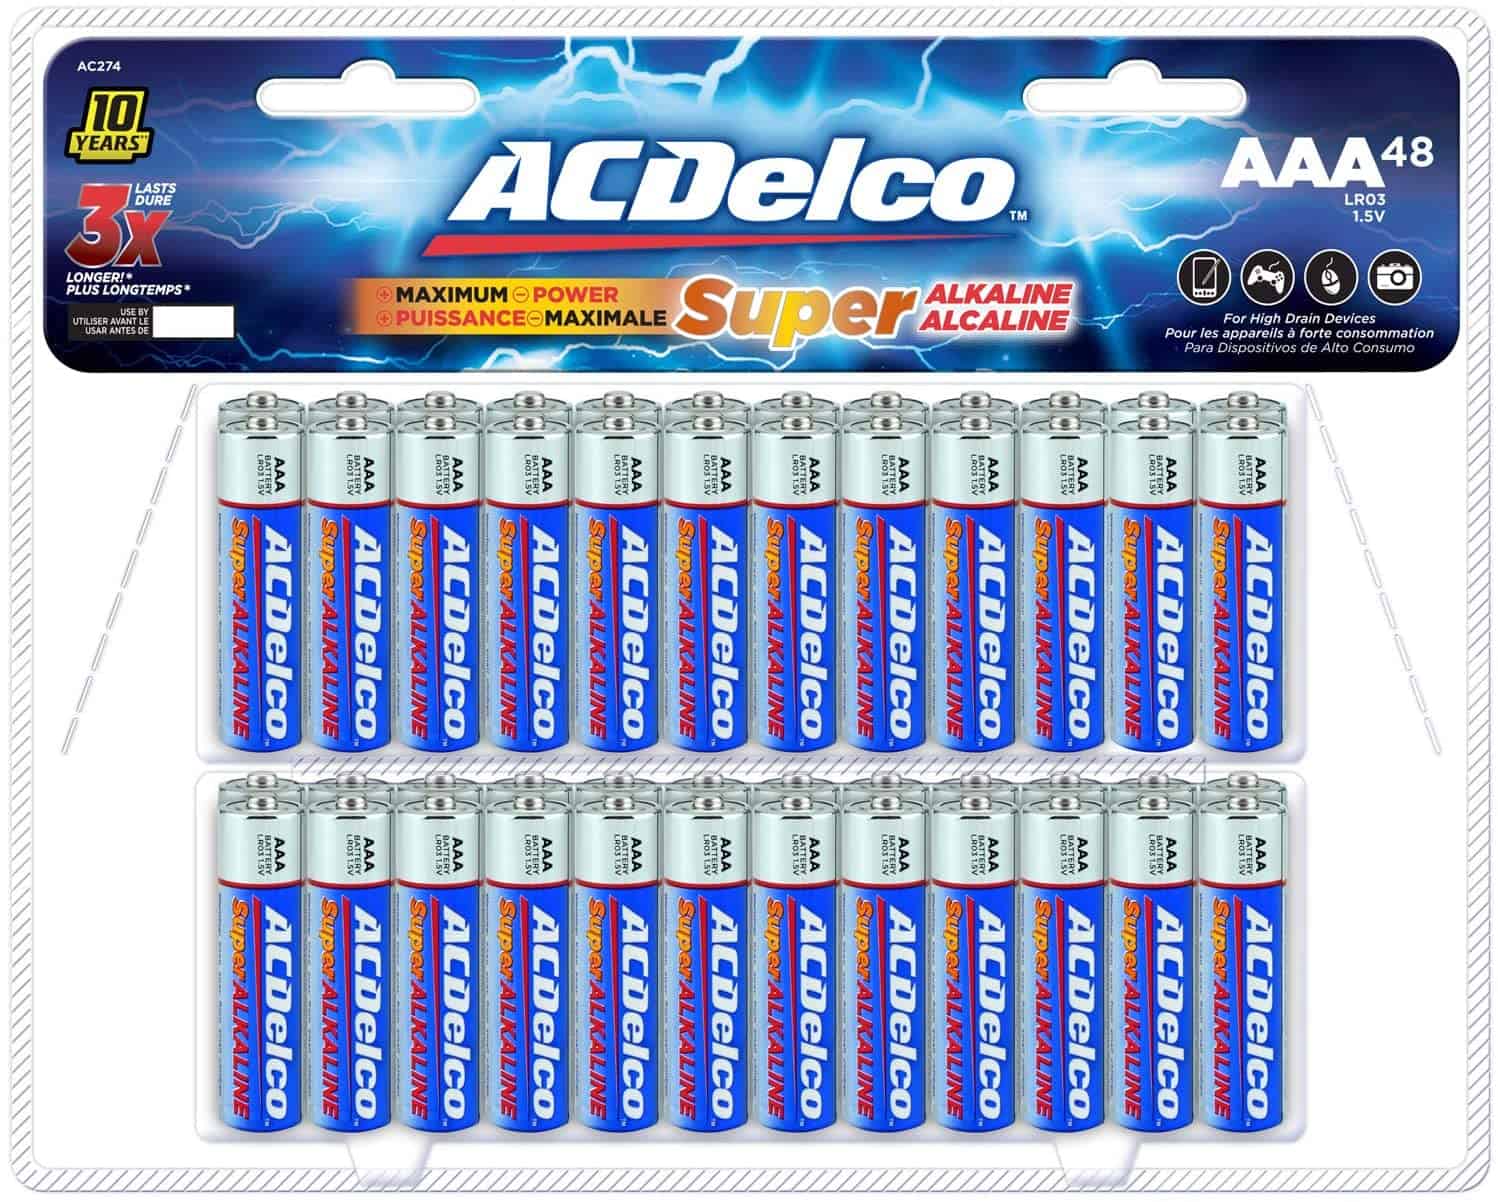 Best AAA Batteries